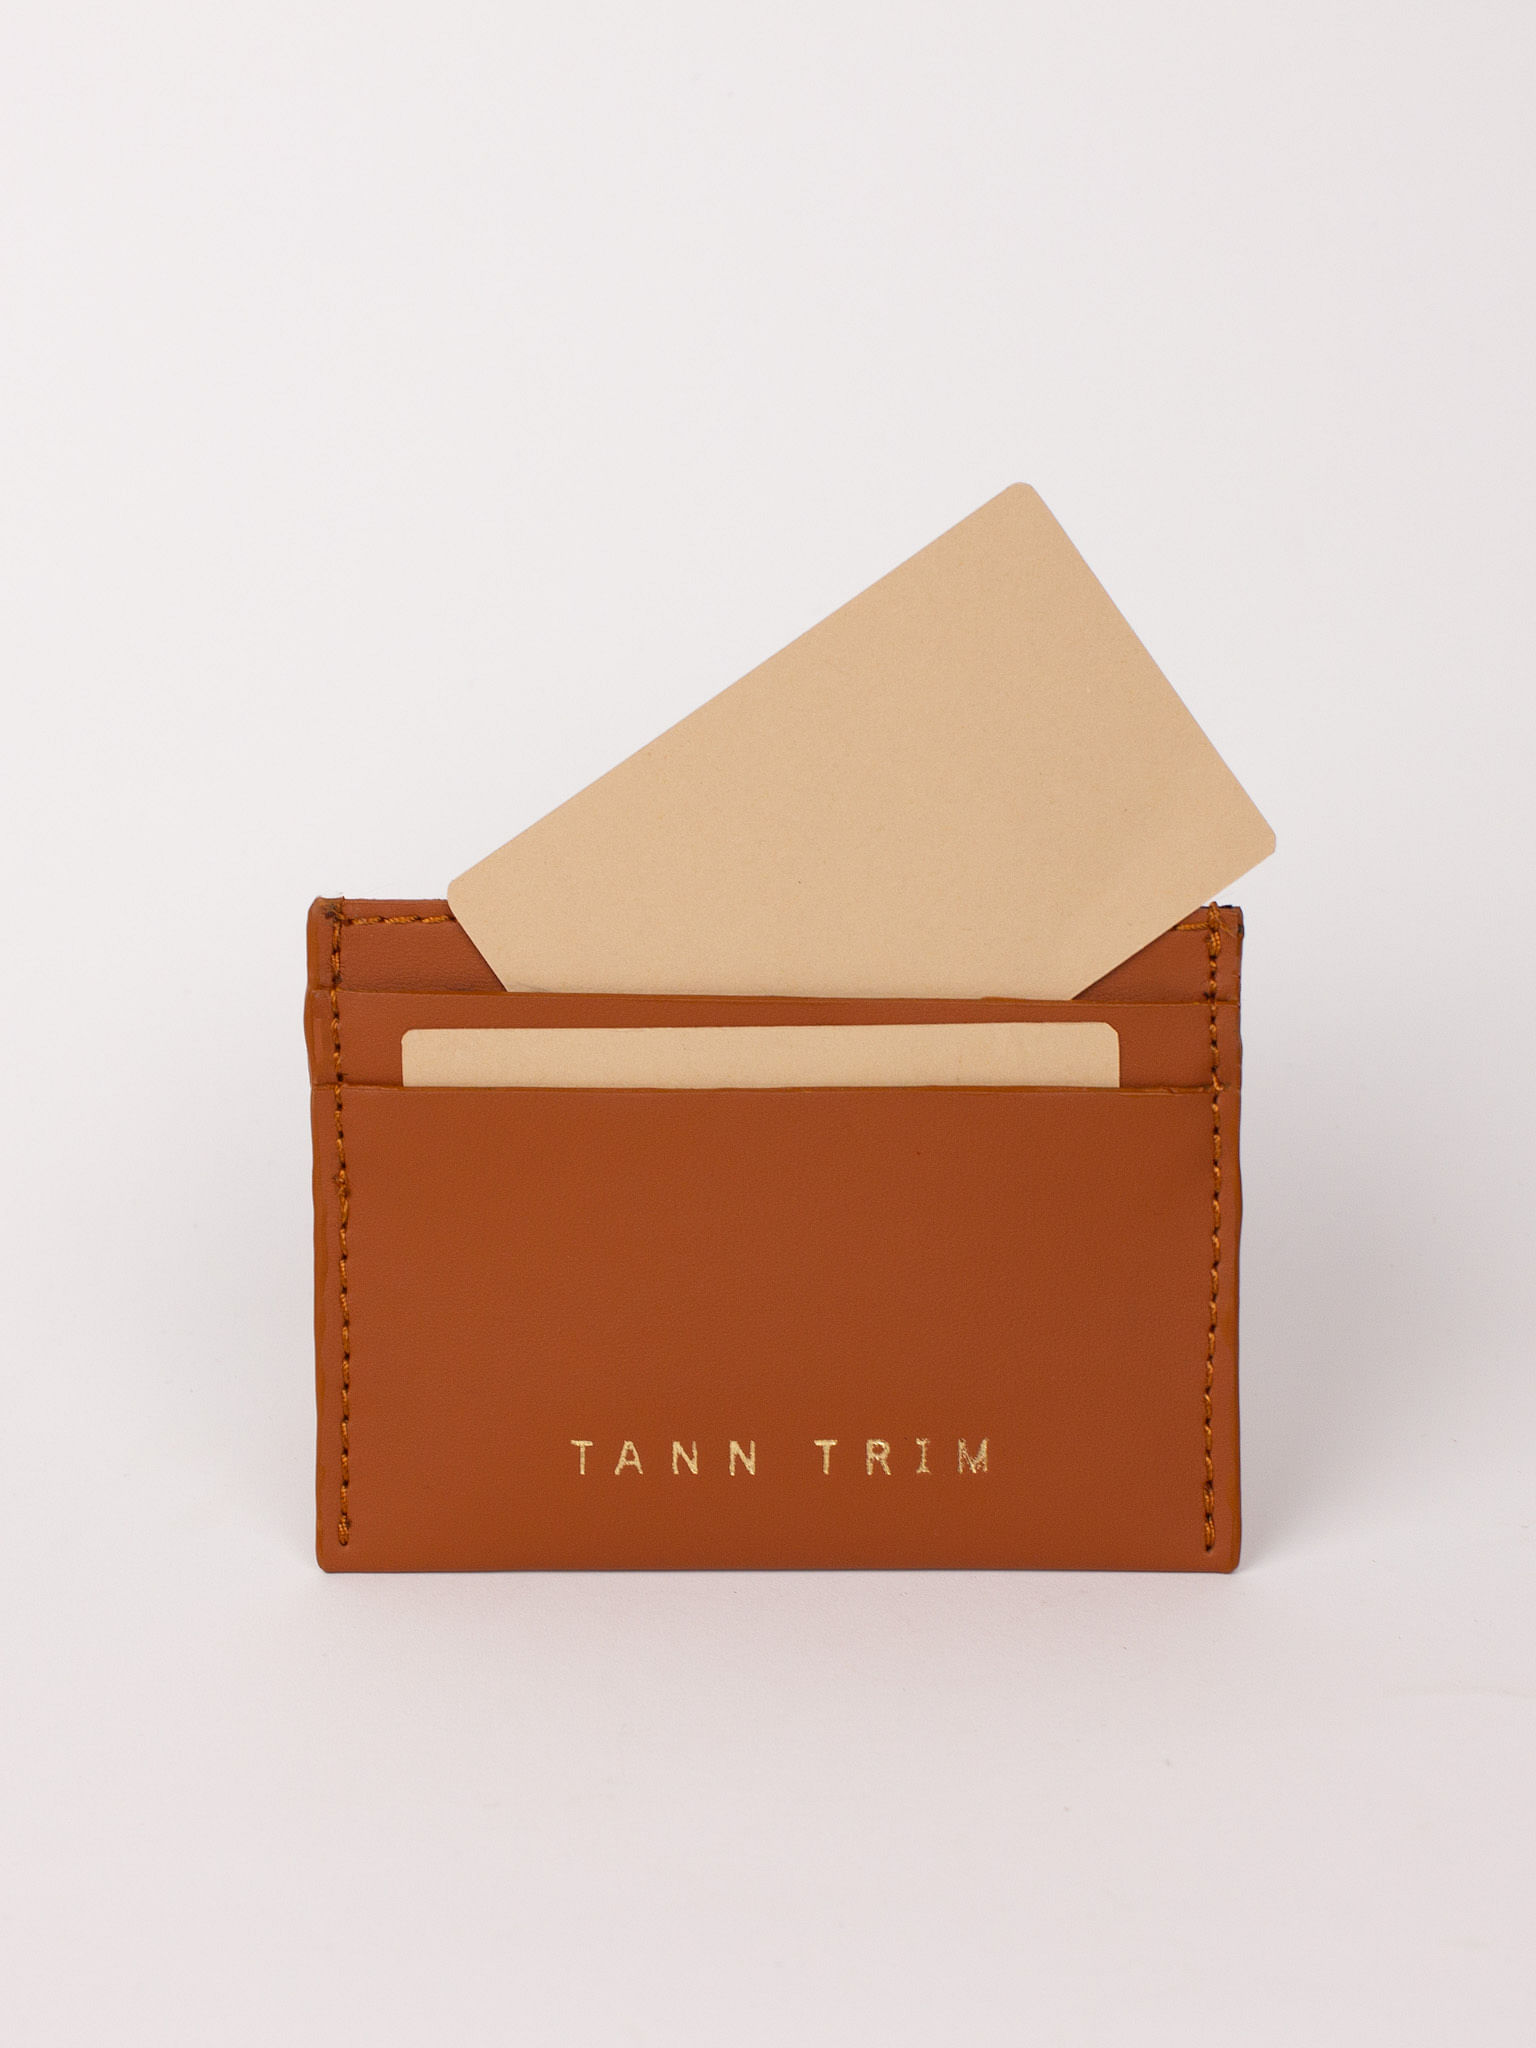 Card Case: Tann